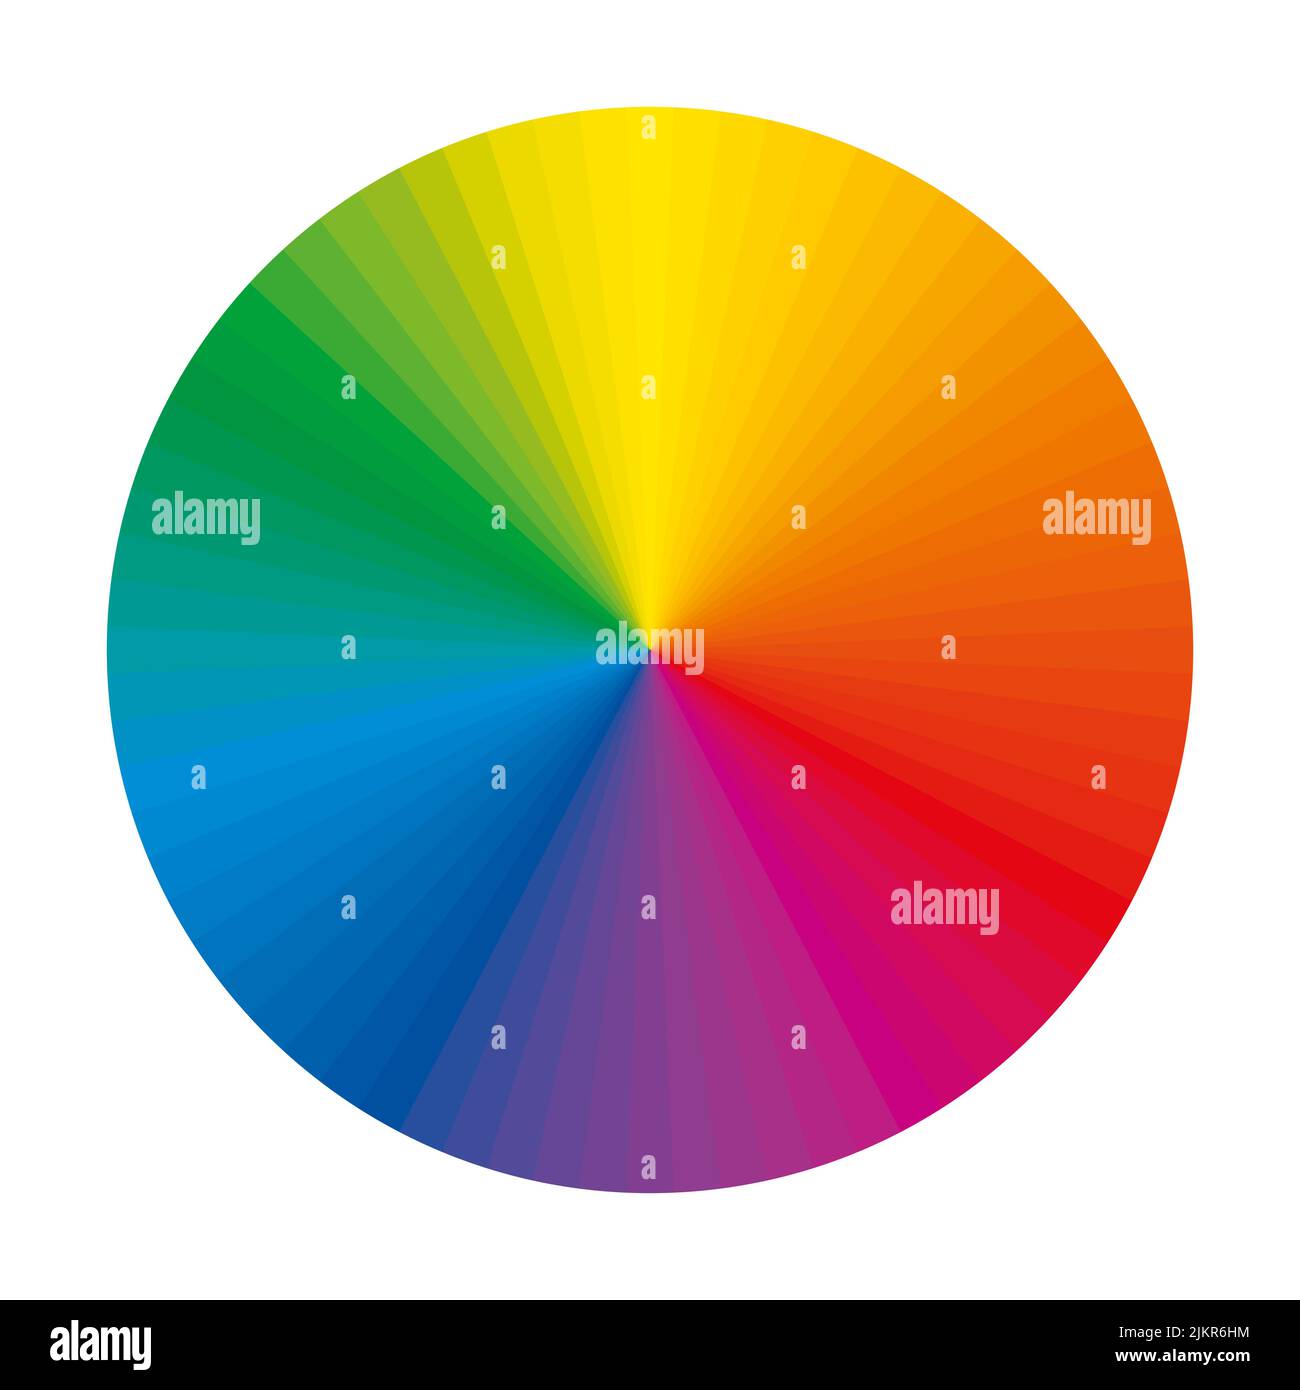 Farbrad mit einem erweiterten Spektrum komplementärer Farbsegmente. Kreis mit 72 regenbogenfarbenen Abschnitten und einzigartigen Farbtönen, die in der Kunst verwendet werden Stockfoto